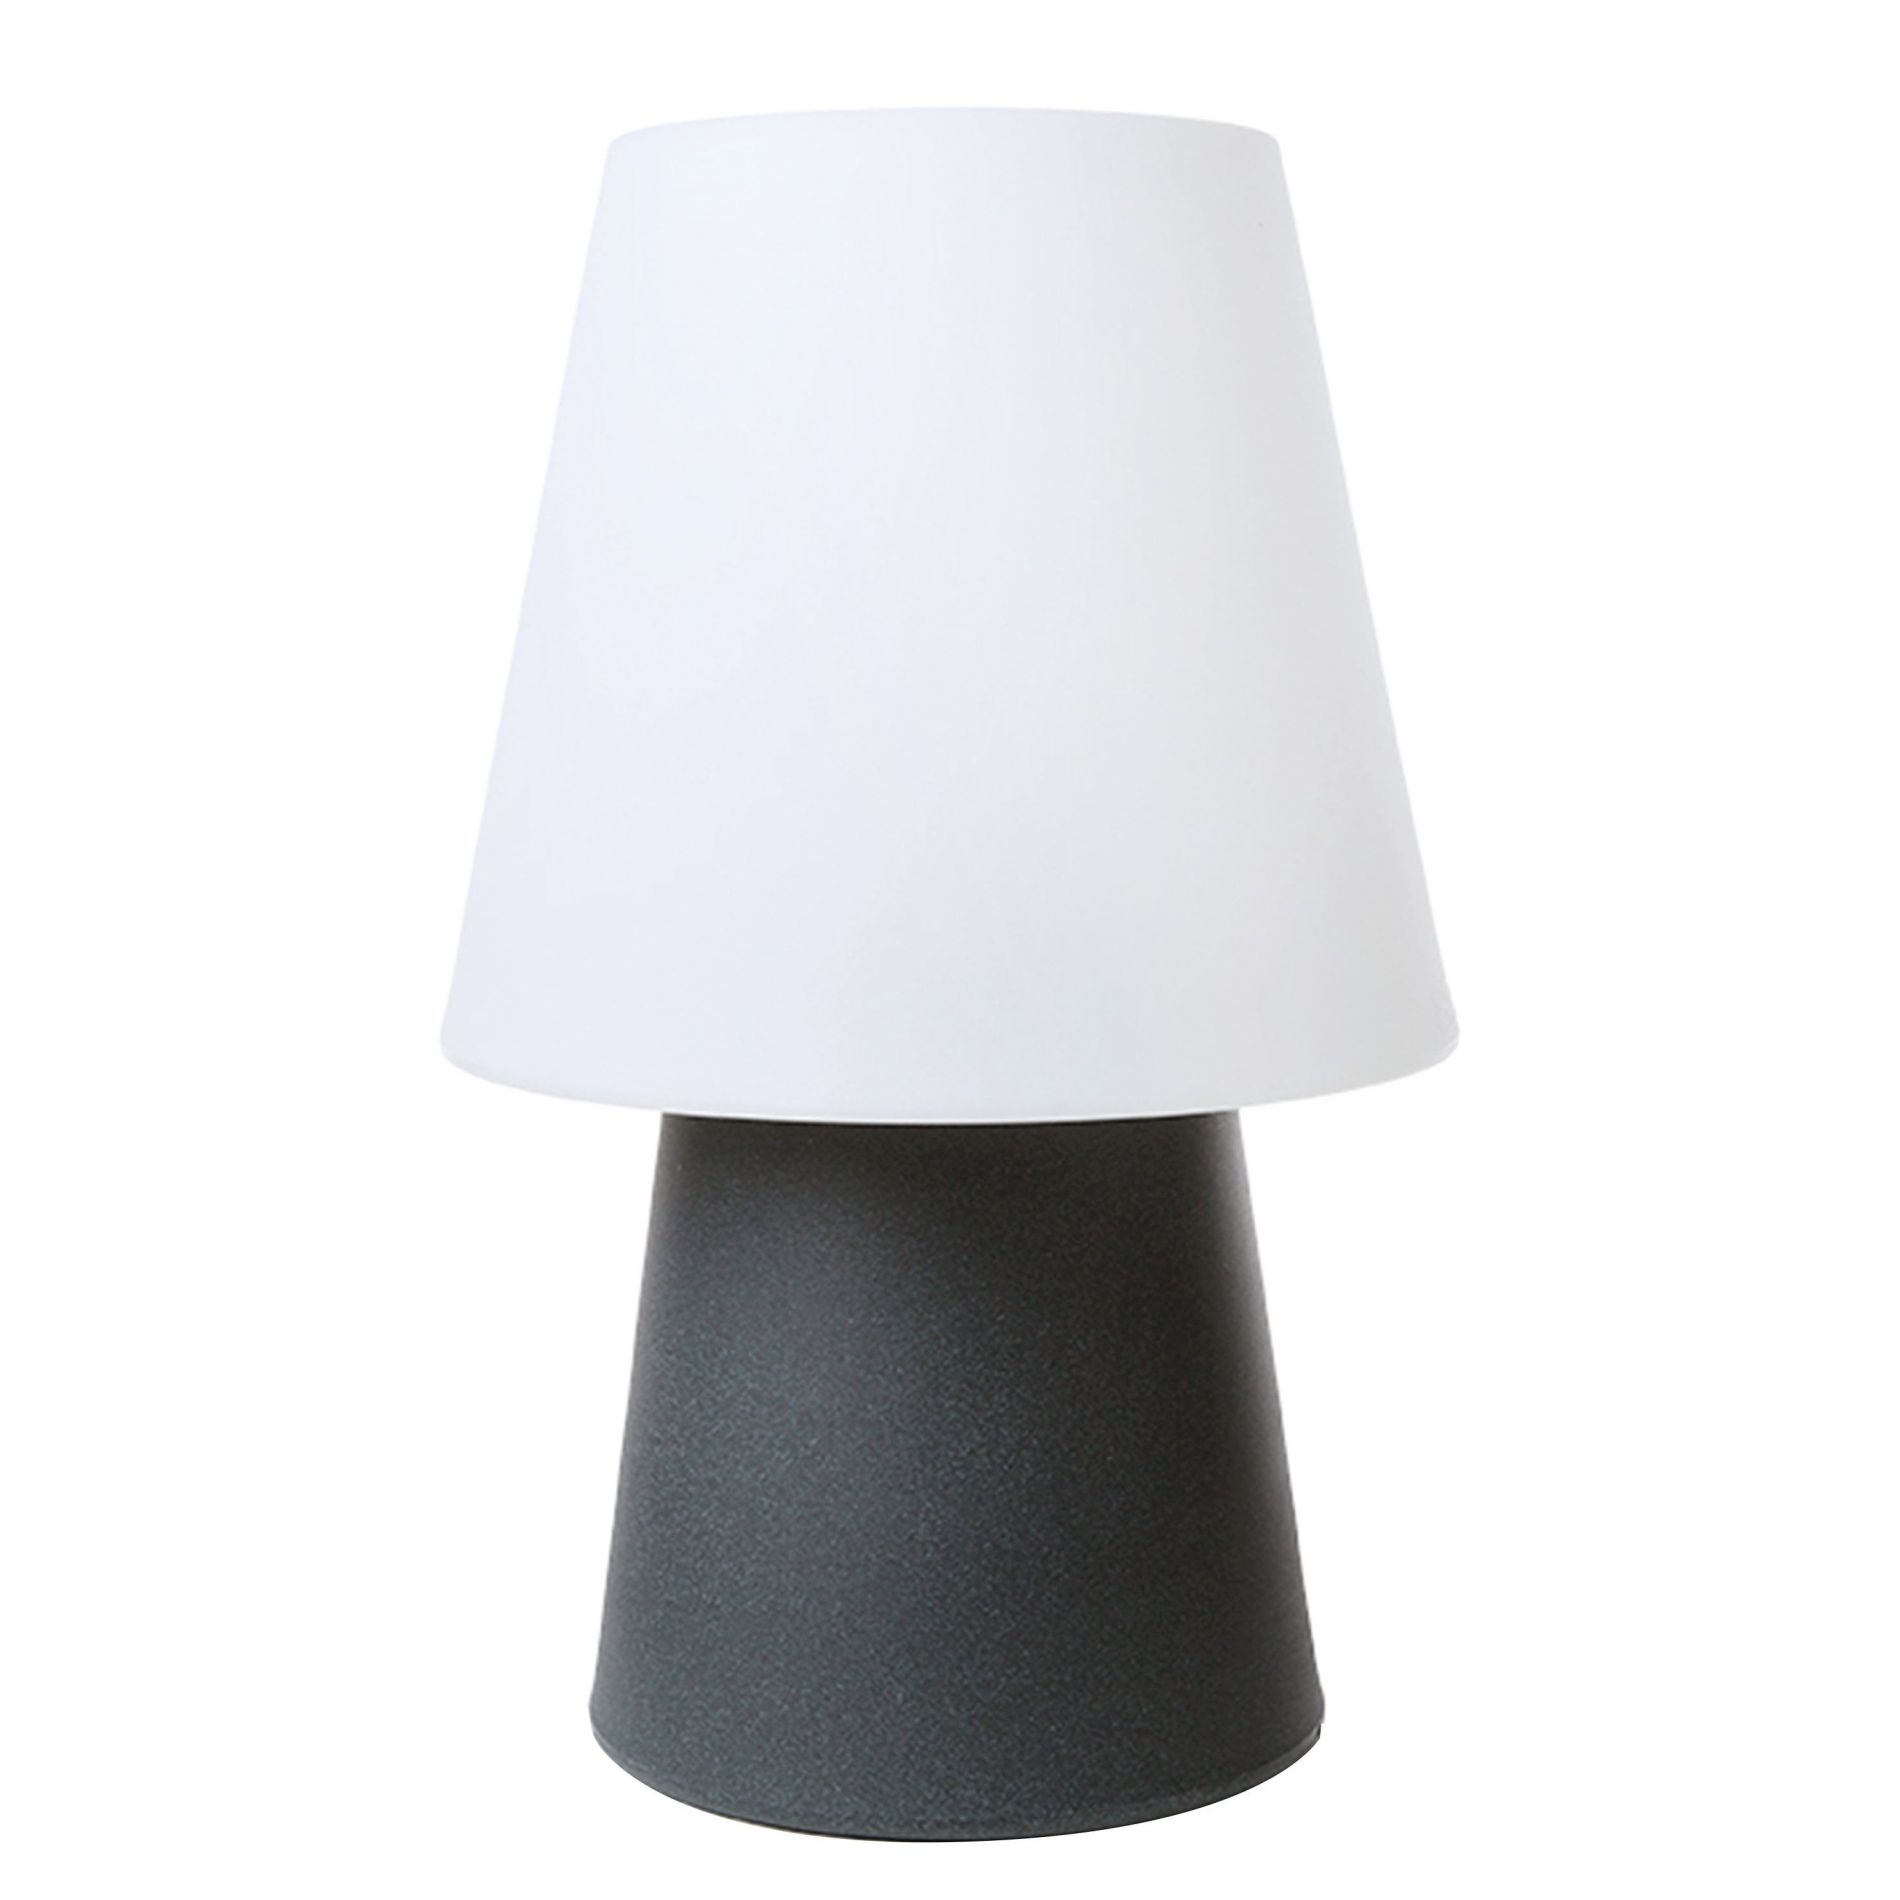 Lampe extérieur LED RVB dimmable ROMANE blanche et grise en PVC